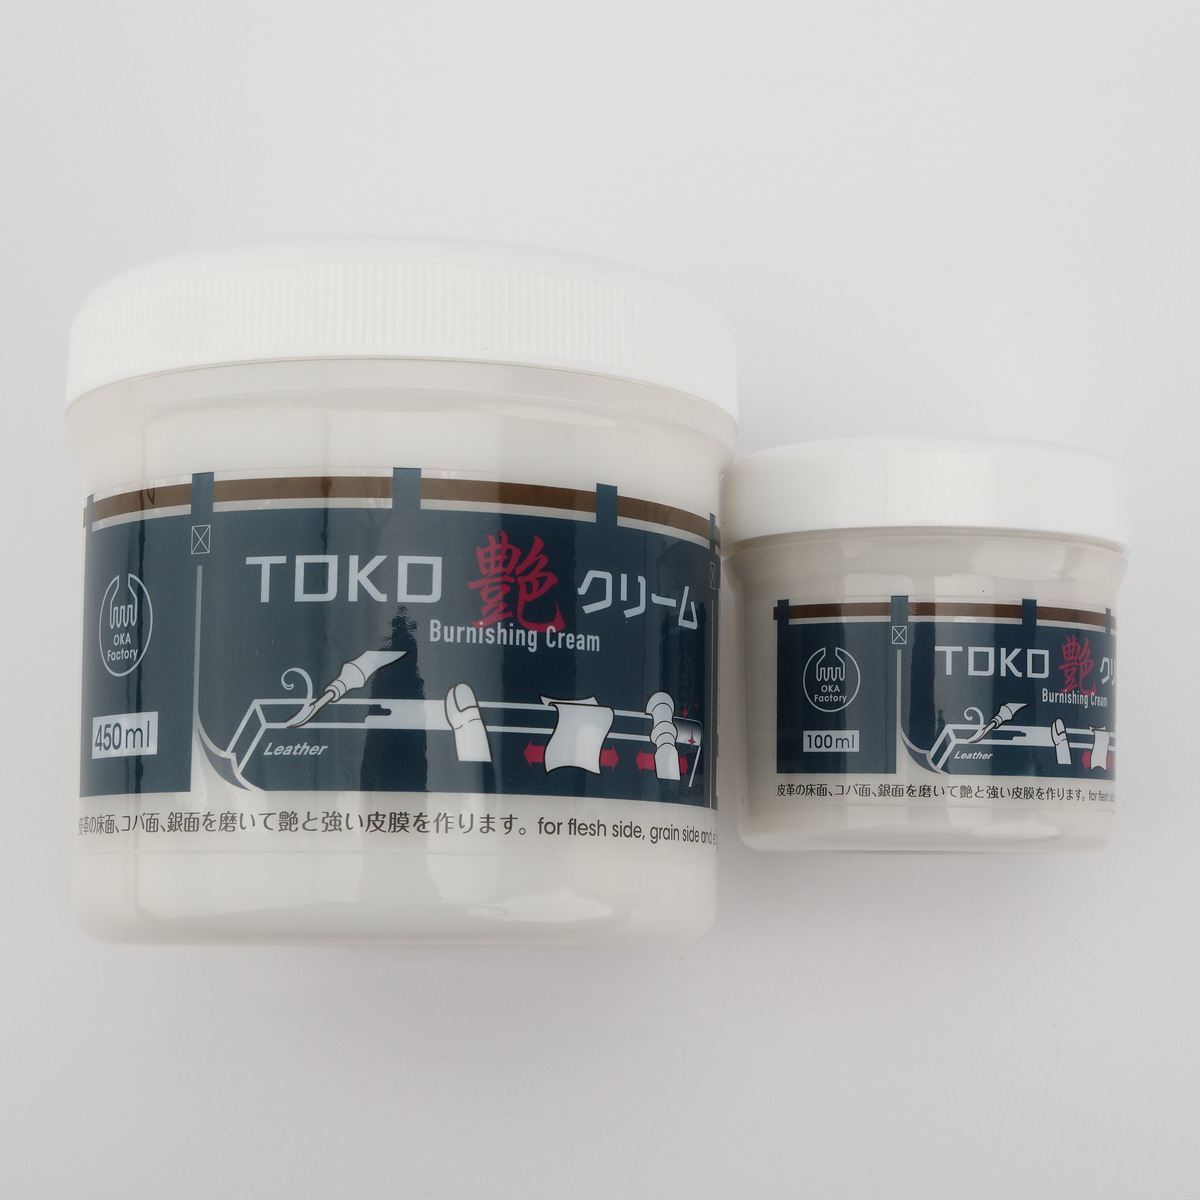 NEW TOKO глянец крем (100ml)koba*toko* серебряный поверхность полировальный крем 2 плата работа с кожей для отделка * защита .